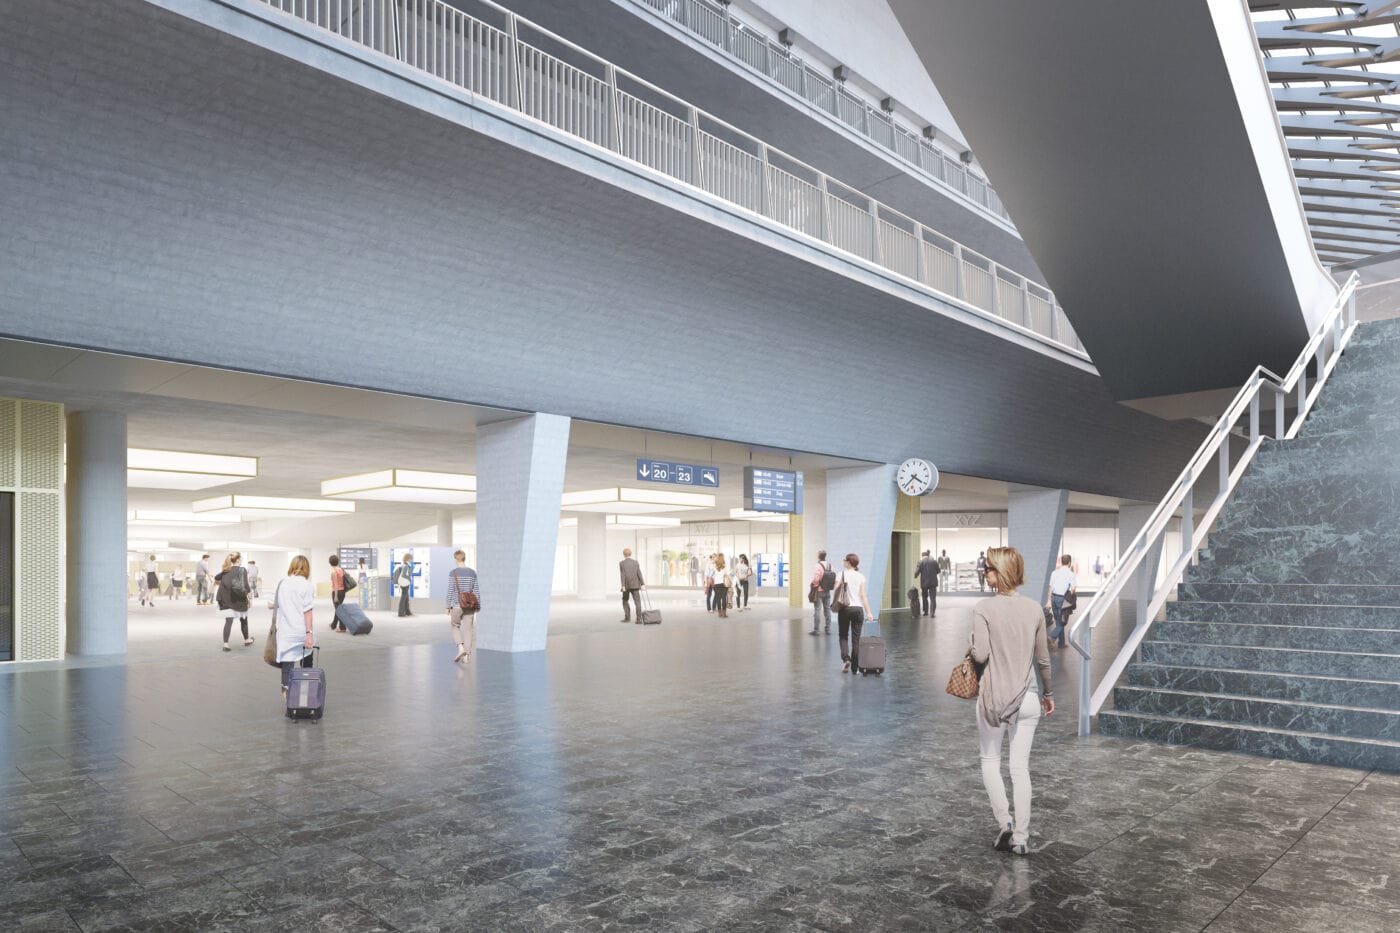 Neuer Megabahnhof: Ein Highlight für Luzern